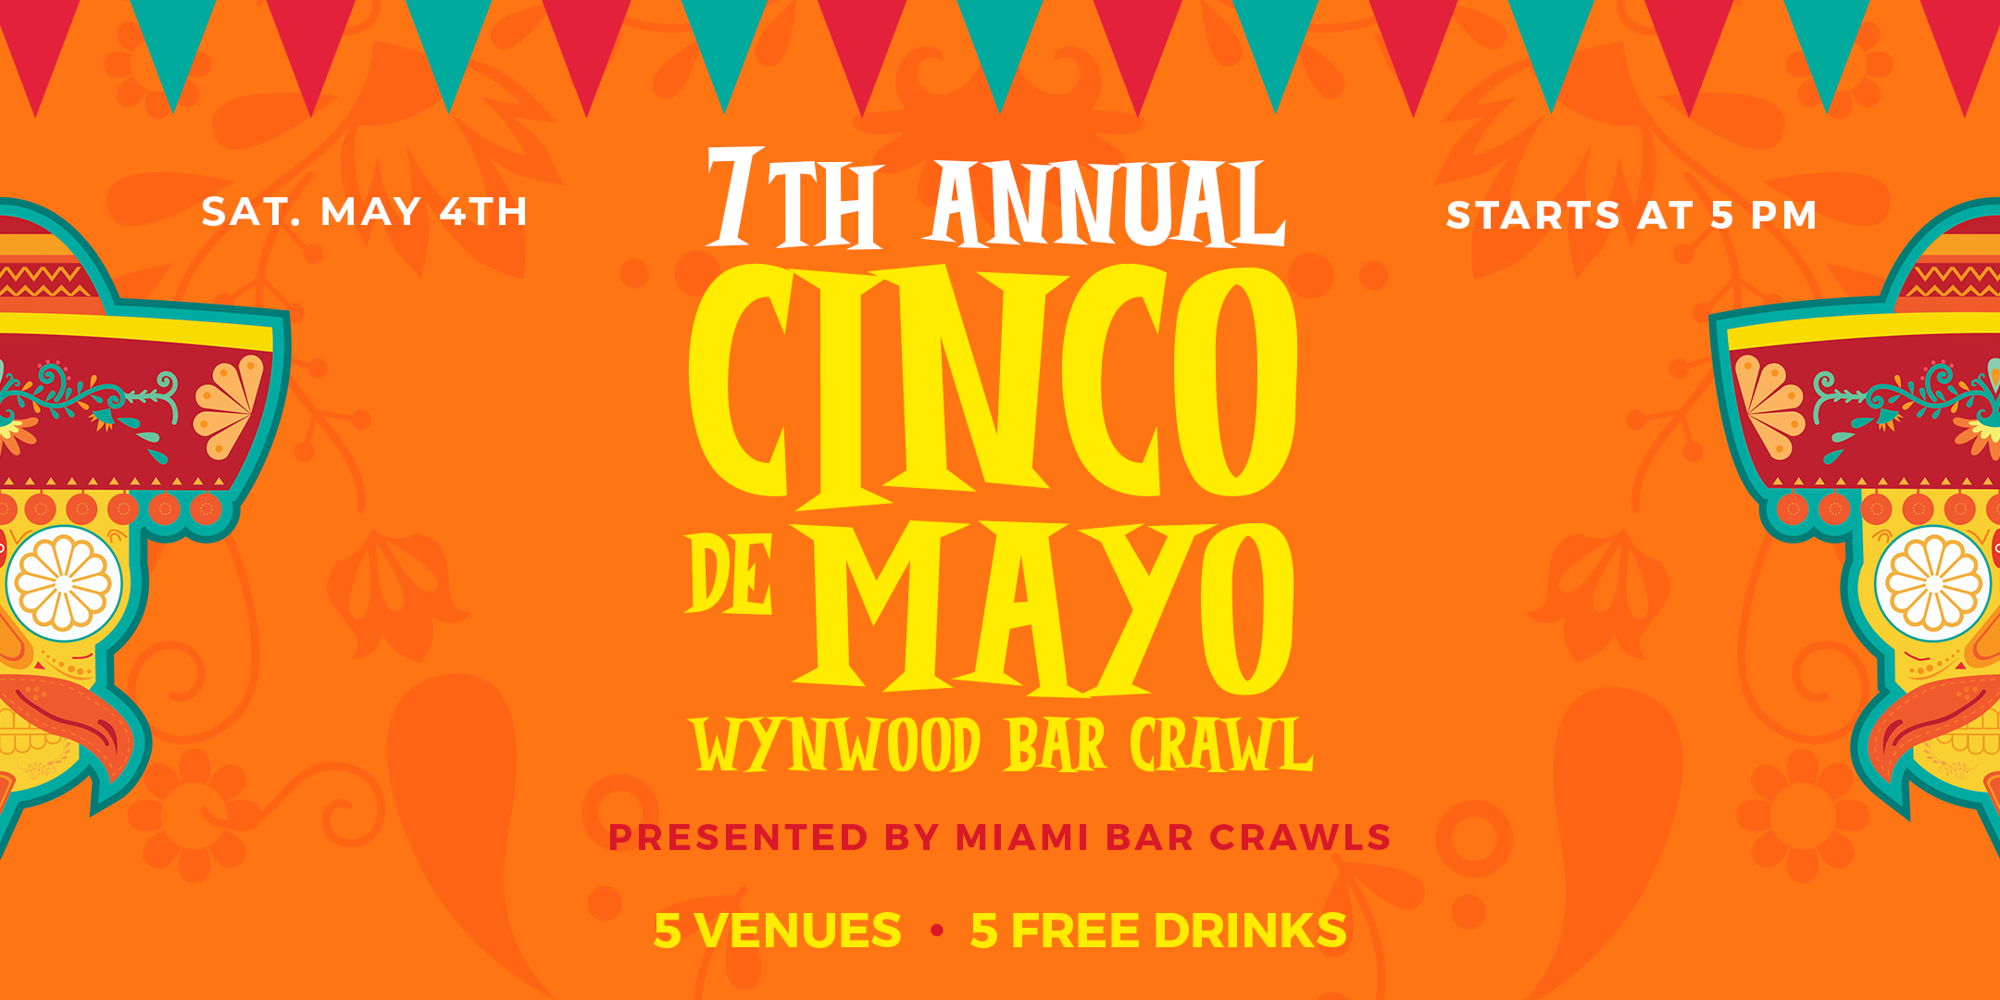 7th Annual Wynwood Cinco de Mayo Bar Crawl - Day 1 promotional image